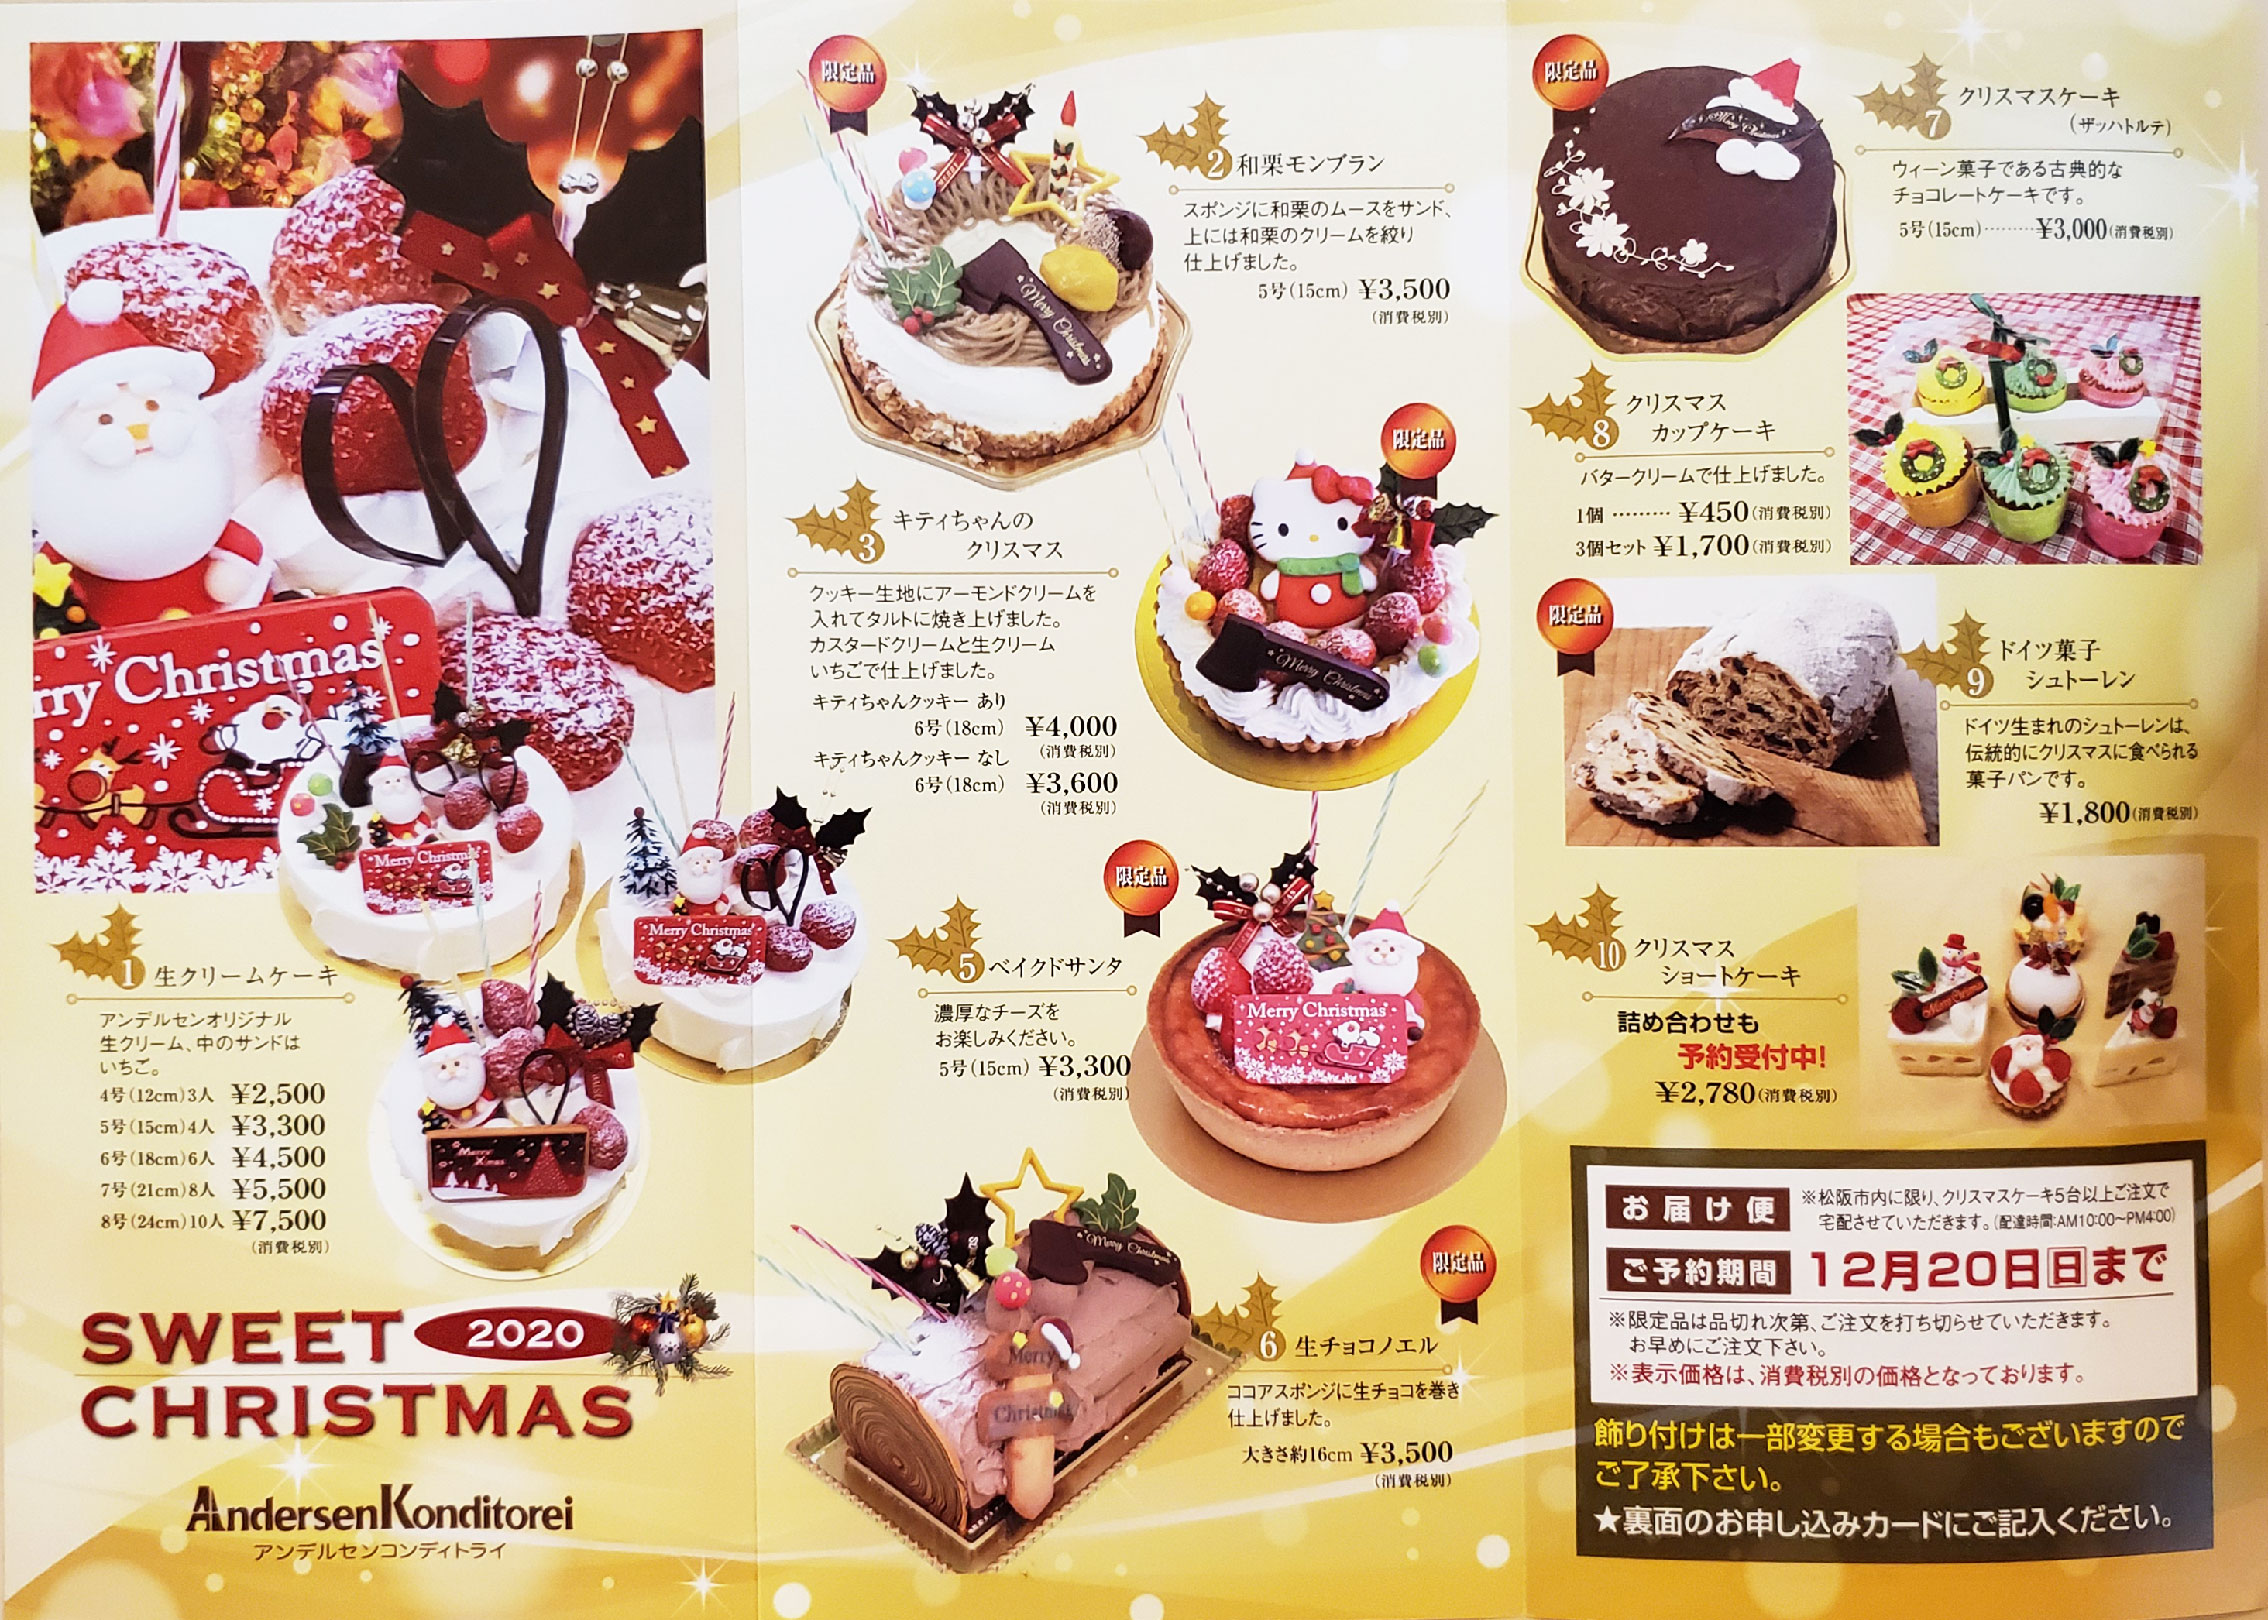 美味しい 可愛い 松阪で愛される洋菓子店 松阪競輪オウンドメディア